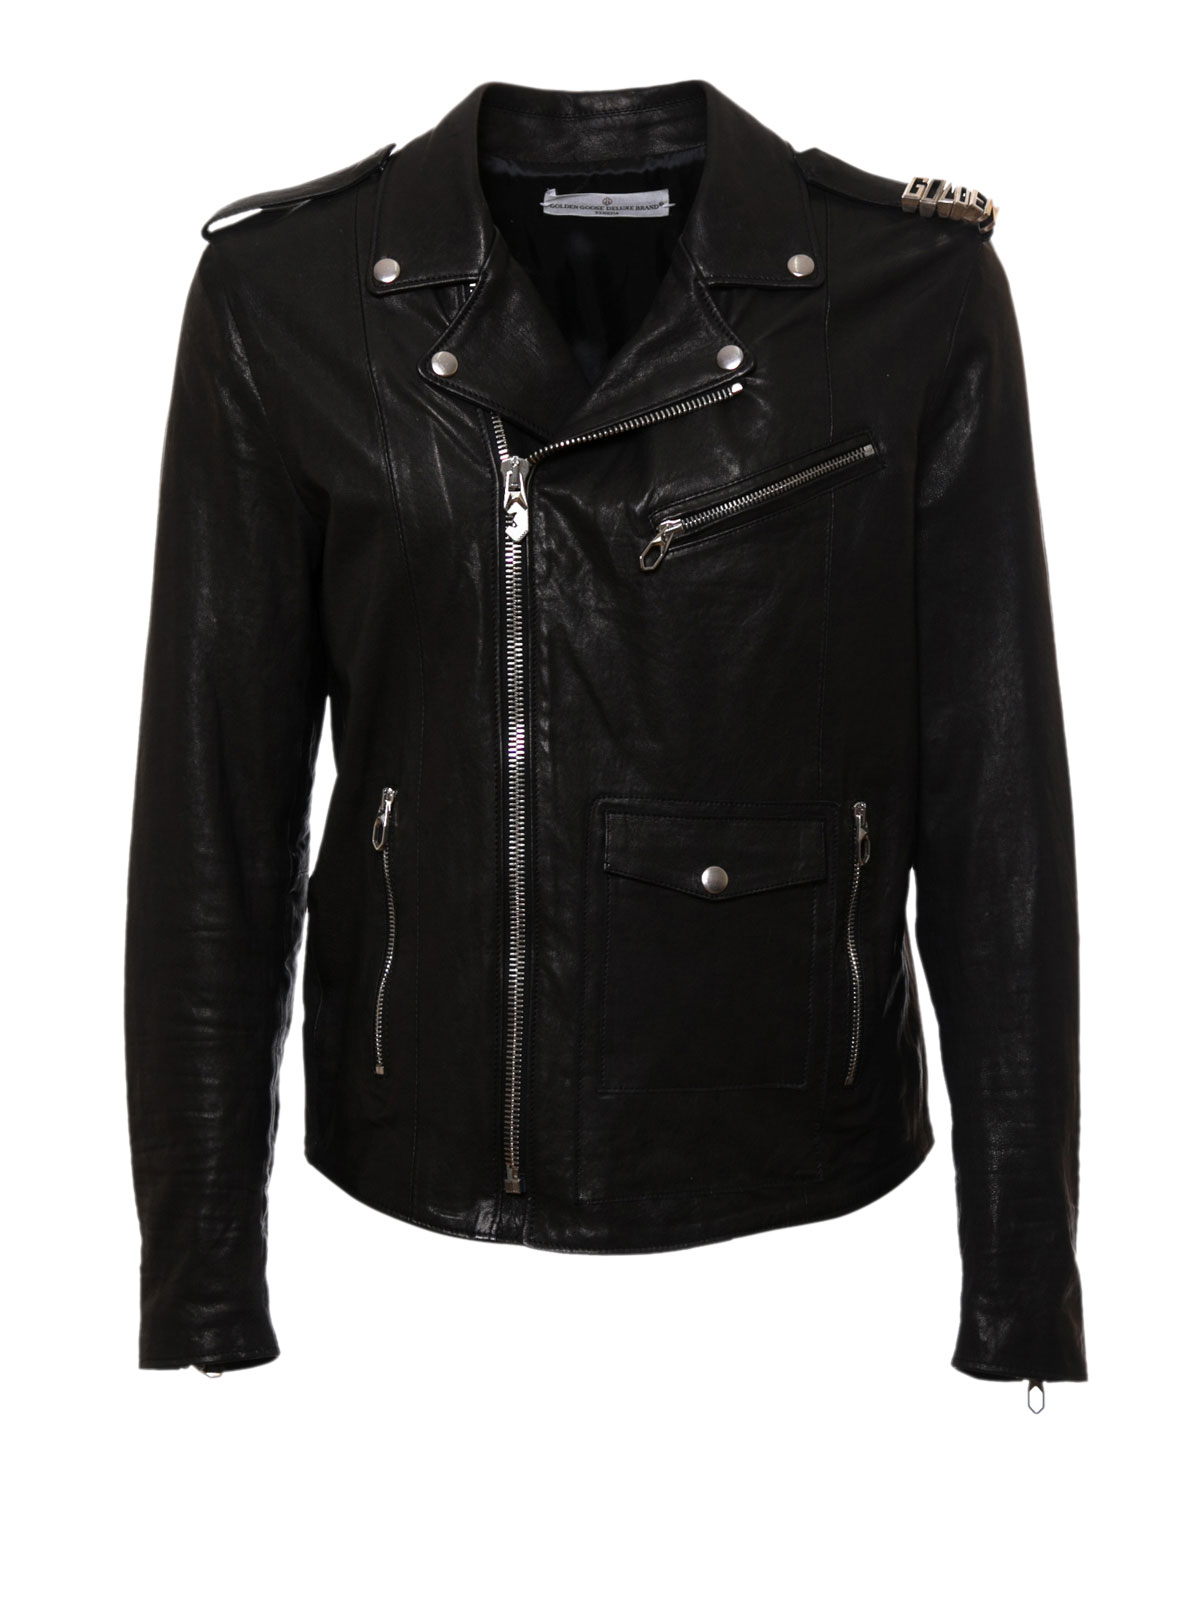 Biker jackets Golden Goose - Leather biker jacket - G28MP737A3 | iKRIX.com